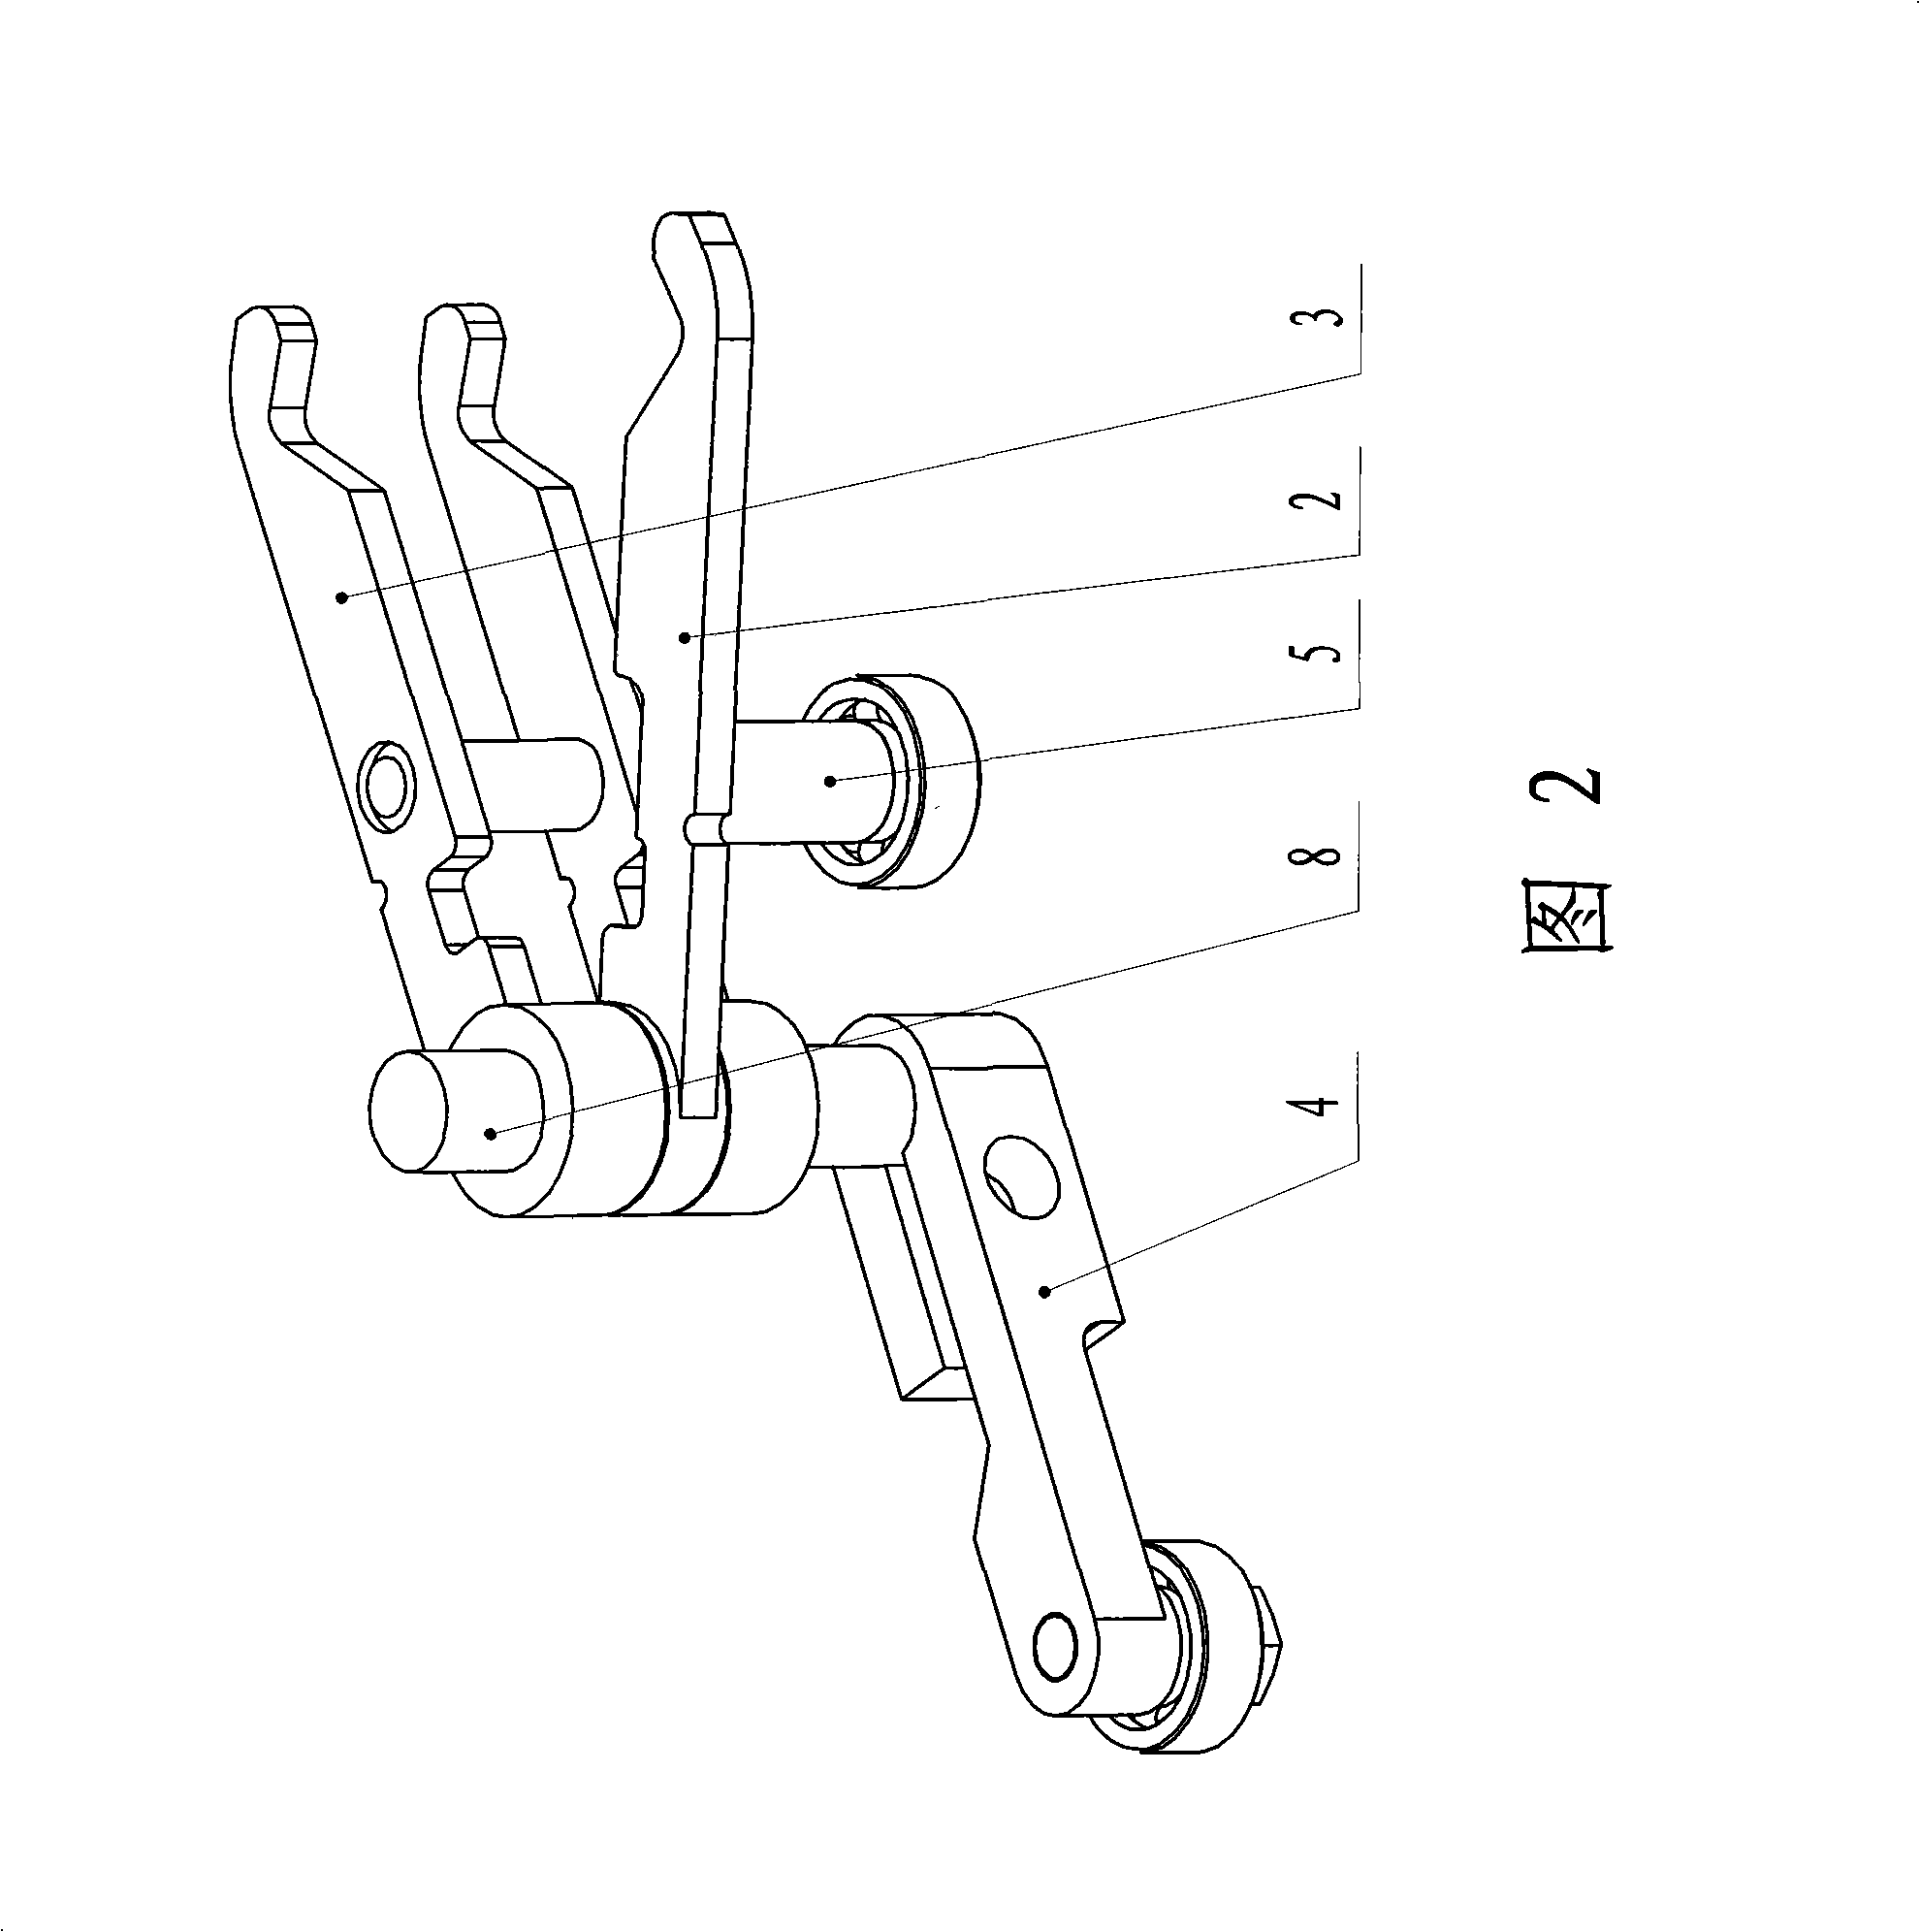 Single-arm clip shaft multi-collet mechanical arm